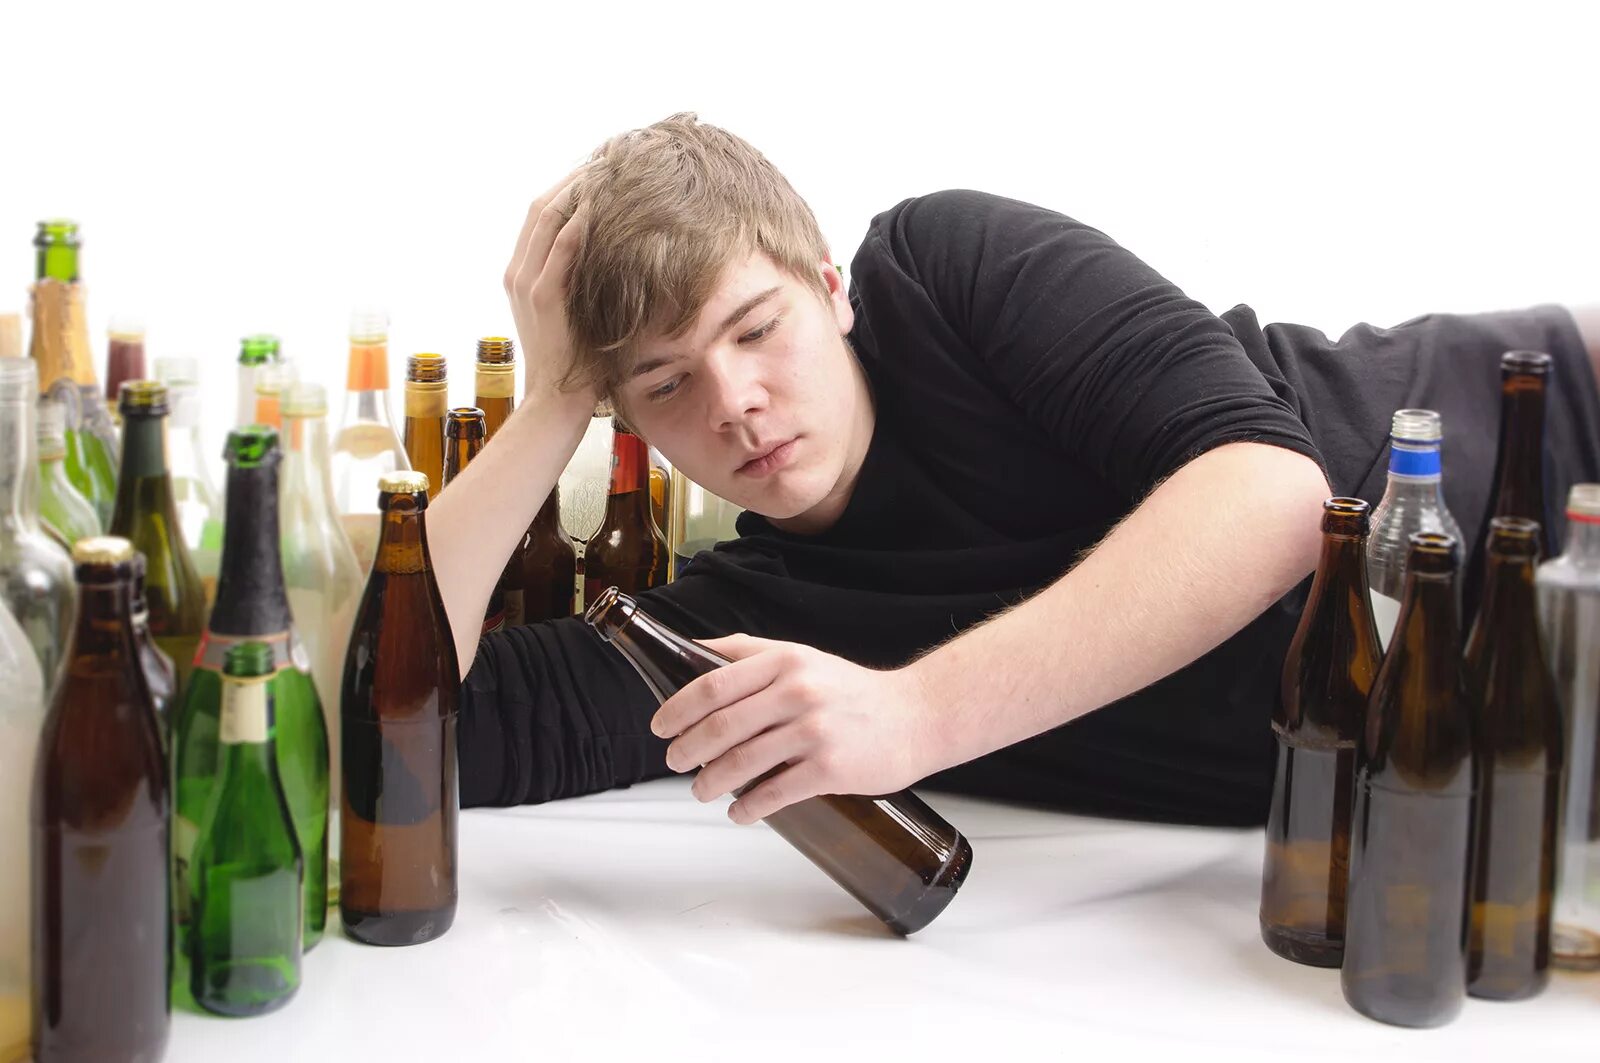 Мужчина злоупотребляет алкоголем. Молодежь с пивом. Алкоголизм молодежи.